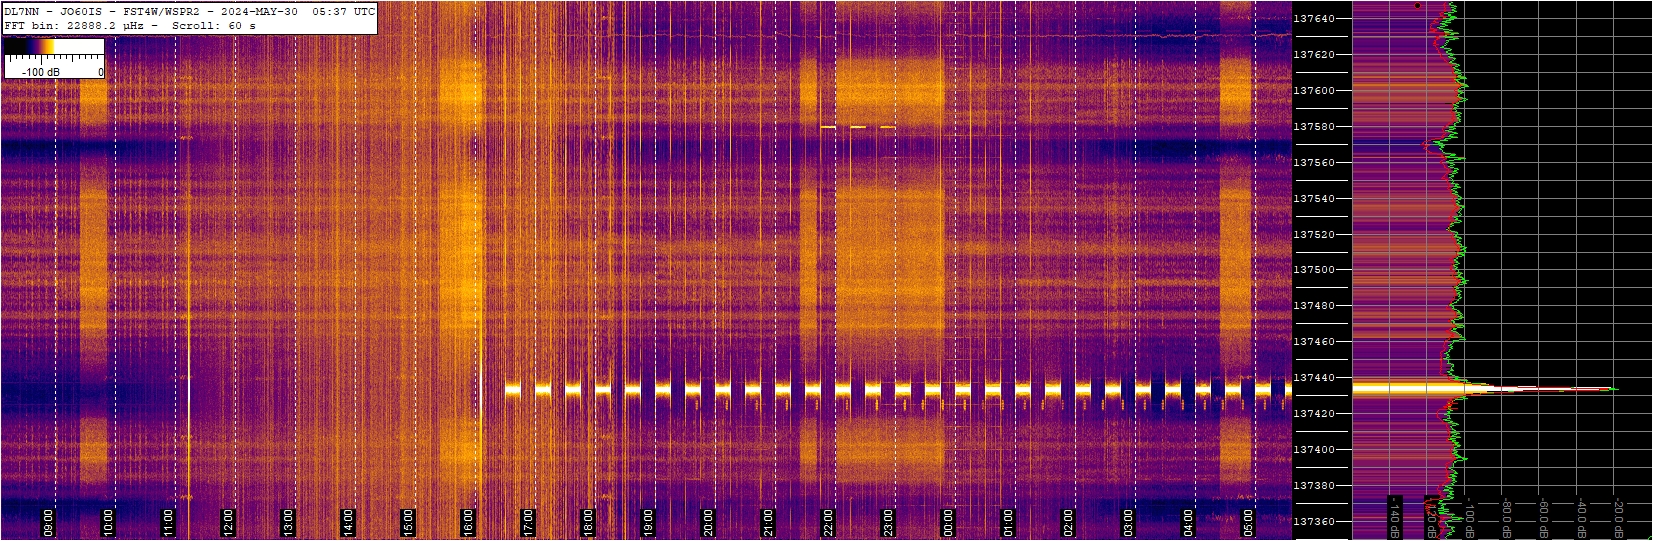 137 kHz band slow